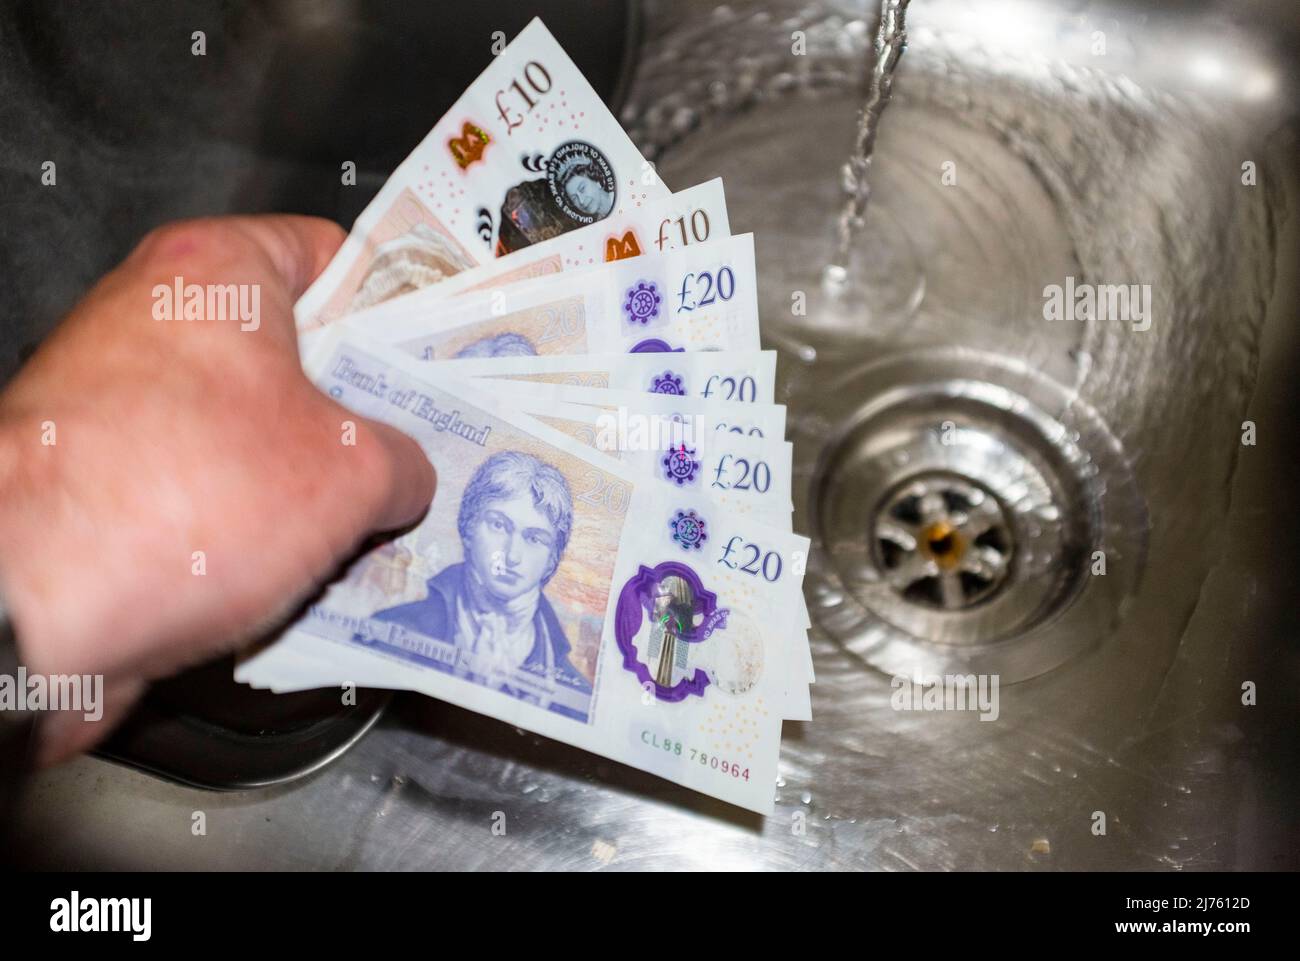 Mani che tengono £20 e £10 note per illustrare i contanti in mano e pagare in contanti o gettando soldi giù lo scolo Foto Stock